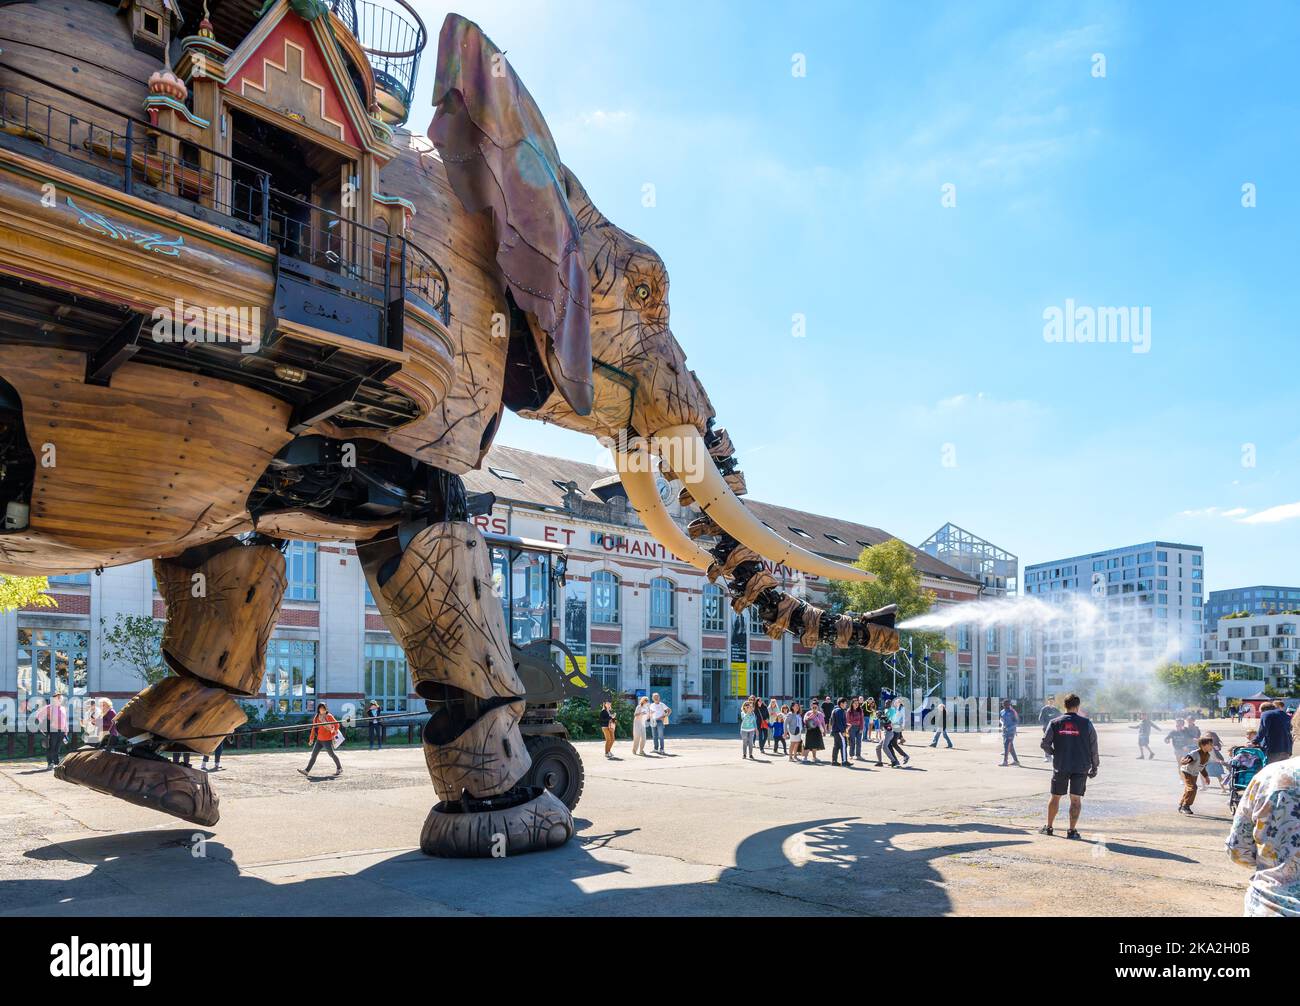 La marionnette géante du grand éléphant, qui fait partie des machines de l'île de Nantes, pulvérise de l'eau avec son tronc sur les spectateurs le long du bâtiment des chantiers navals. Banque D'Images